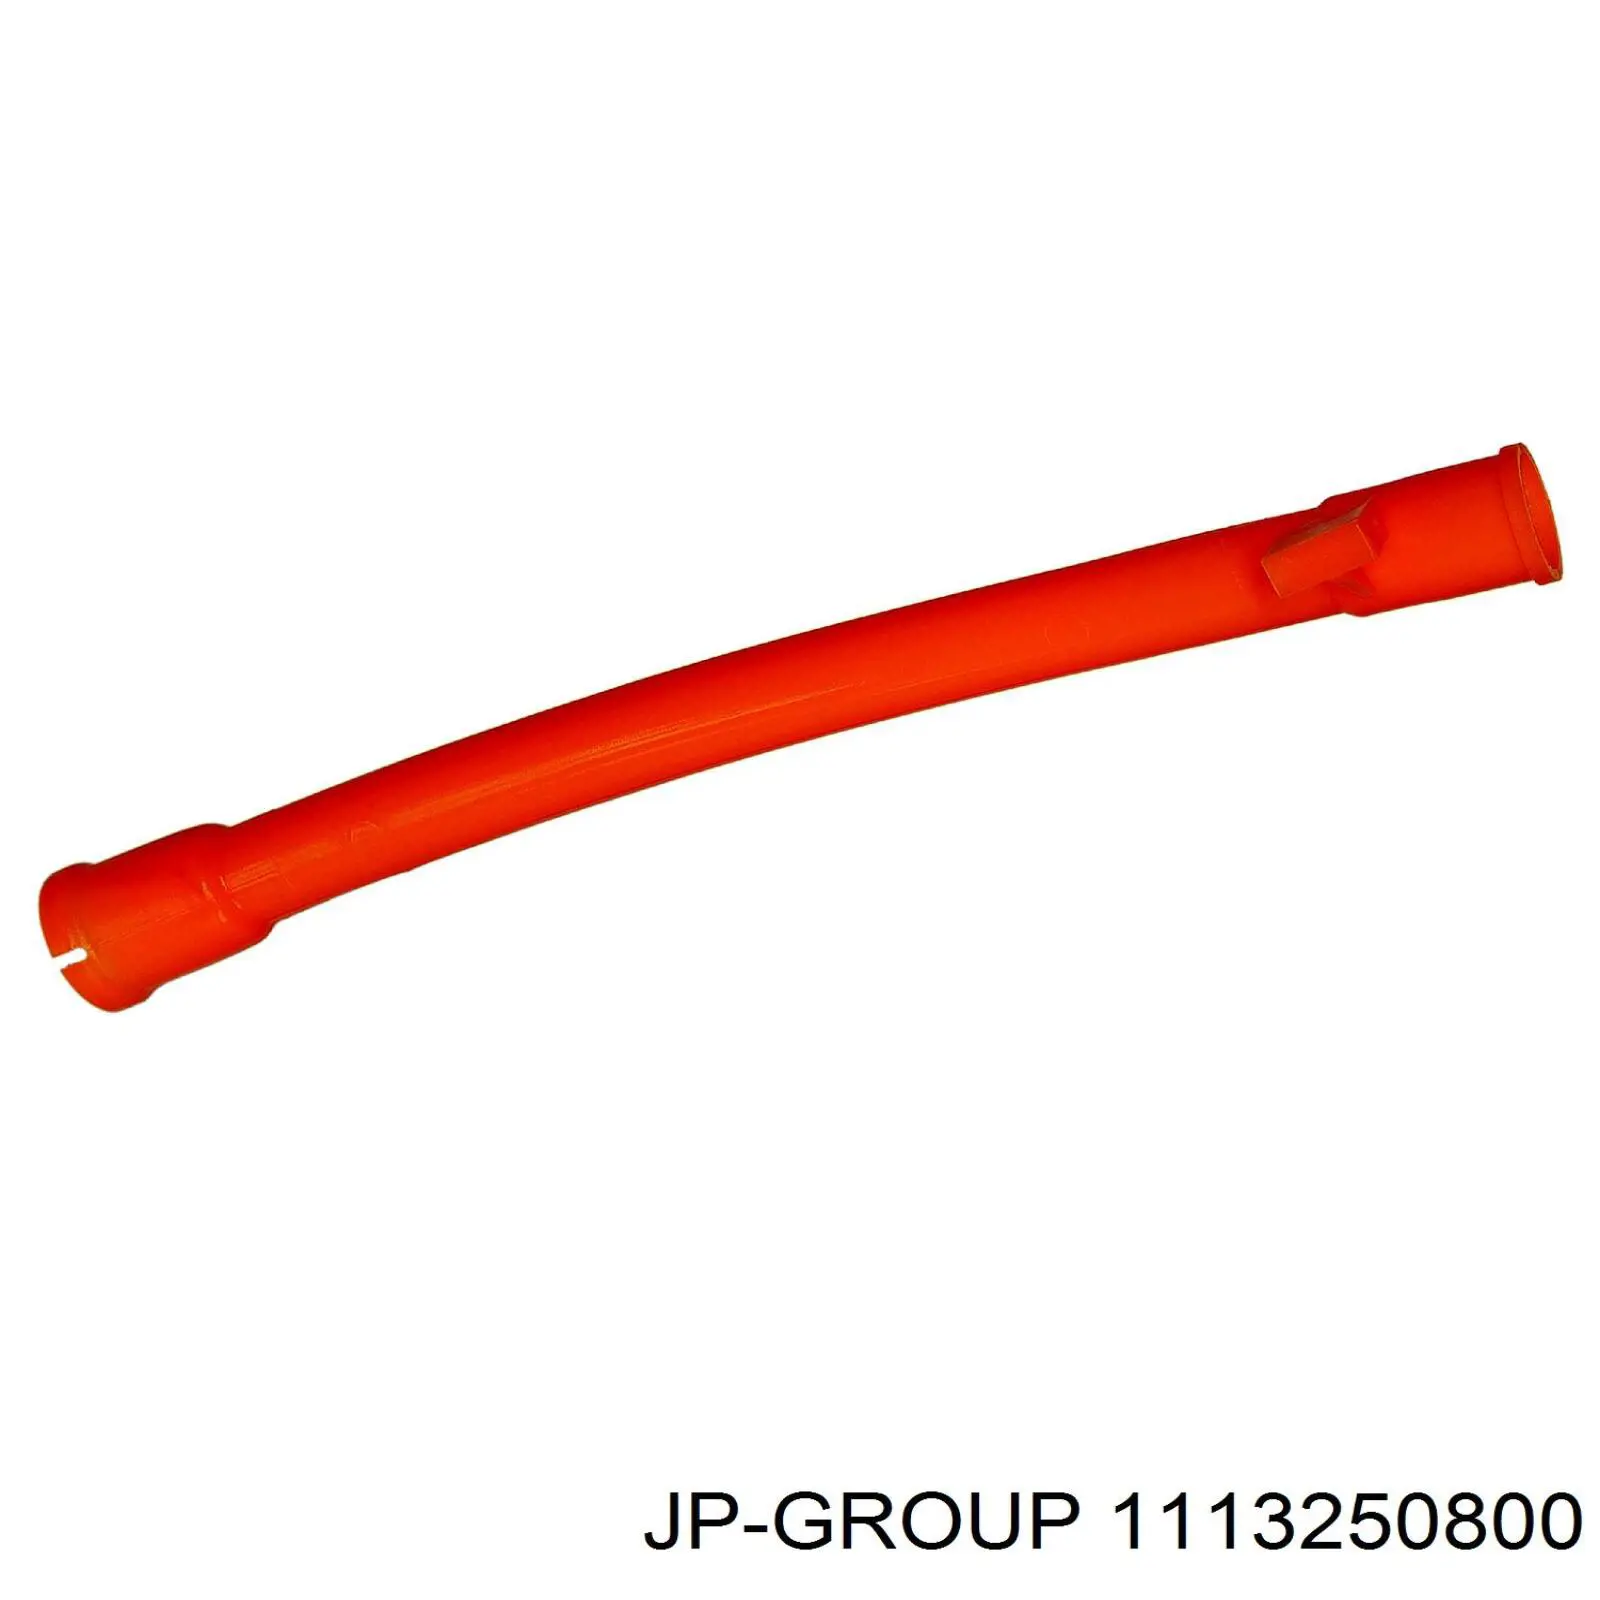 1113250800 JP Group направляющая щупа-индикатора уровня масла в двигателе